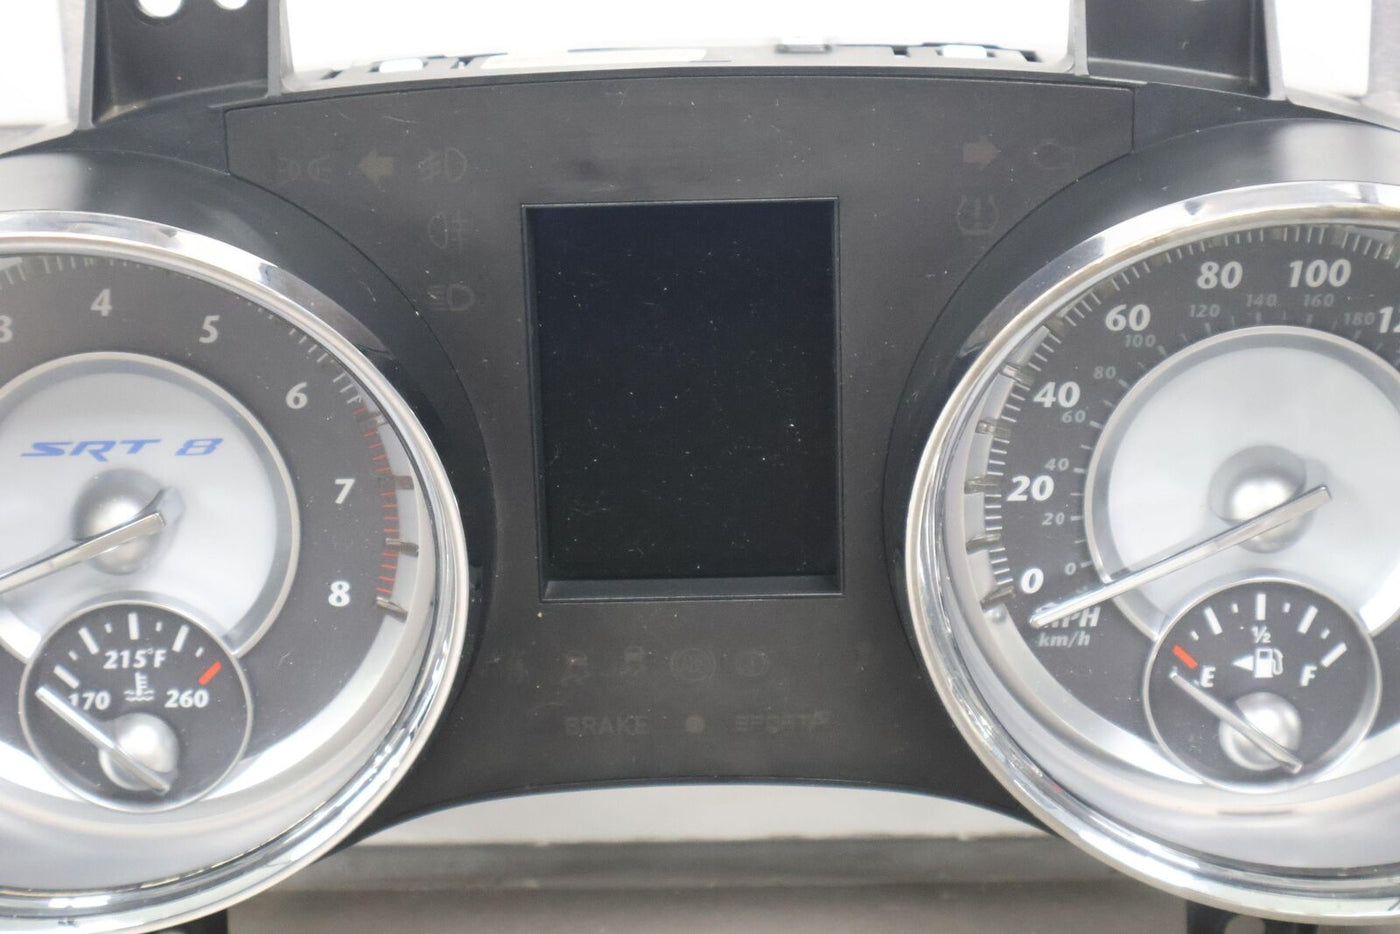 12-14 Chrysler 300 SRT8 180MPH OEM Speedometer Cluster (56046406AJ) Tested